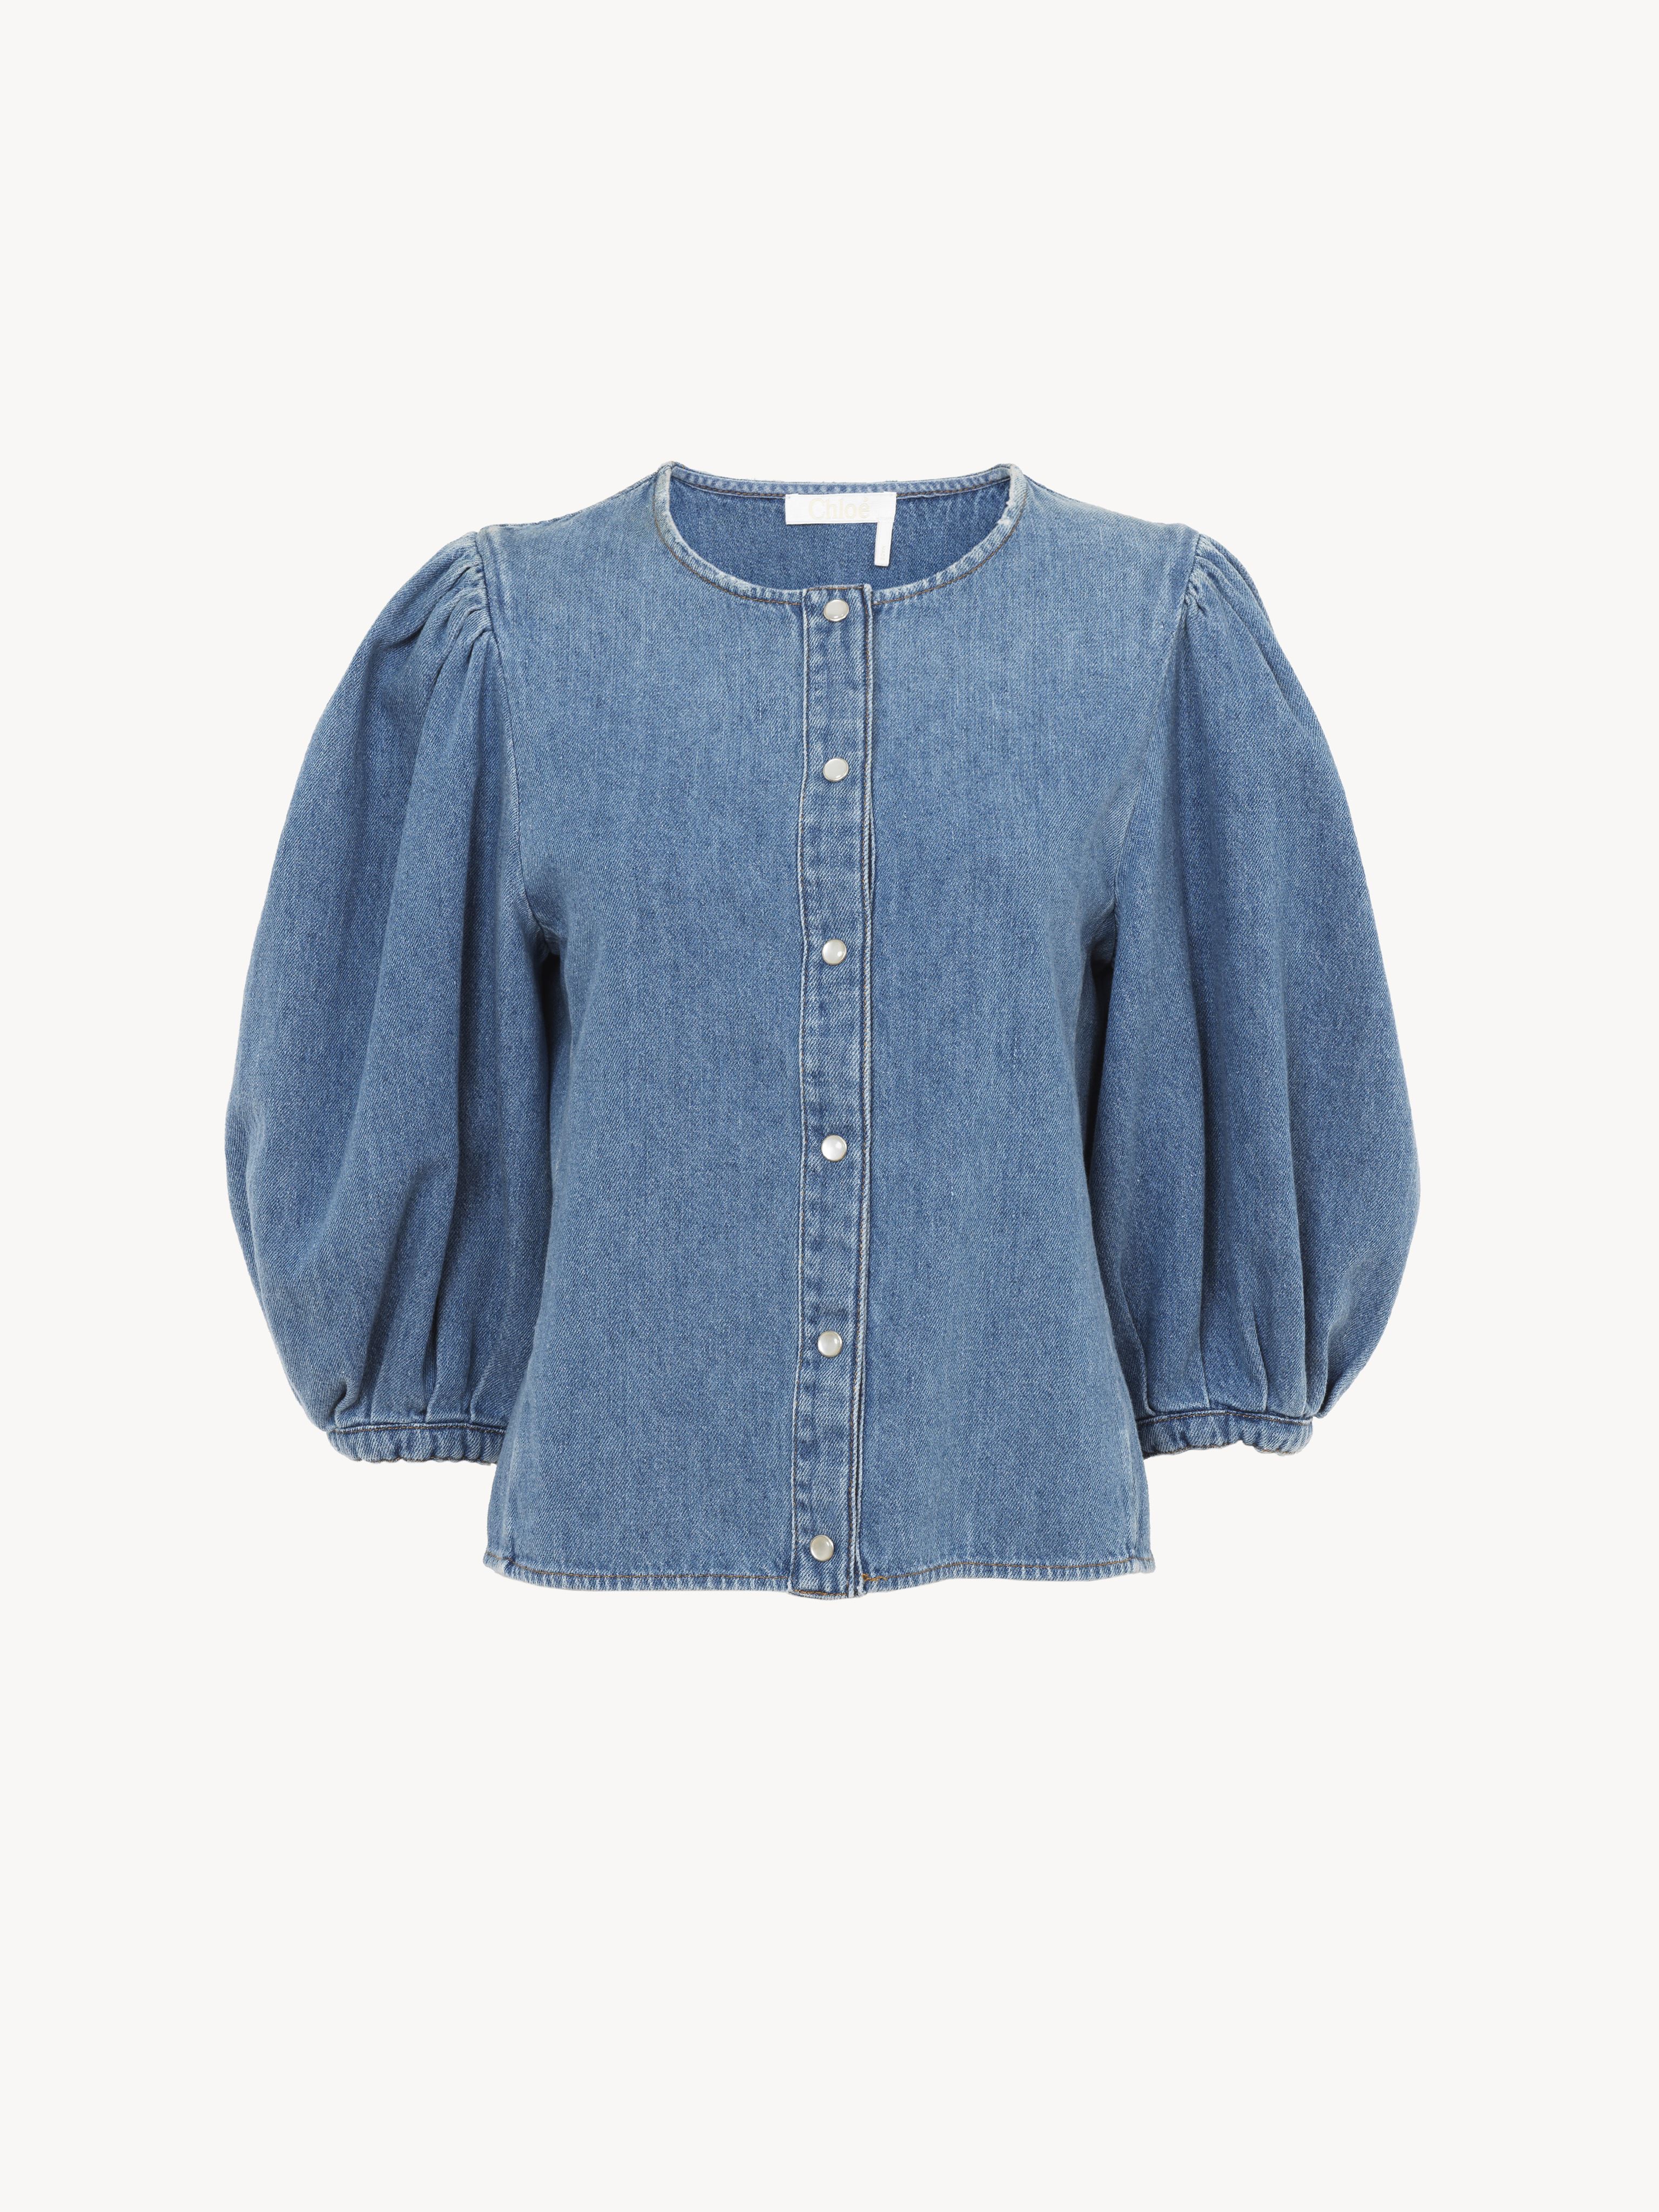 Shop Chloé Collarless Blouse Blue Size 14 80% Cotton, 20% Linen